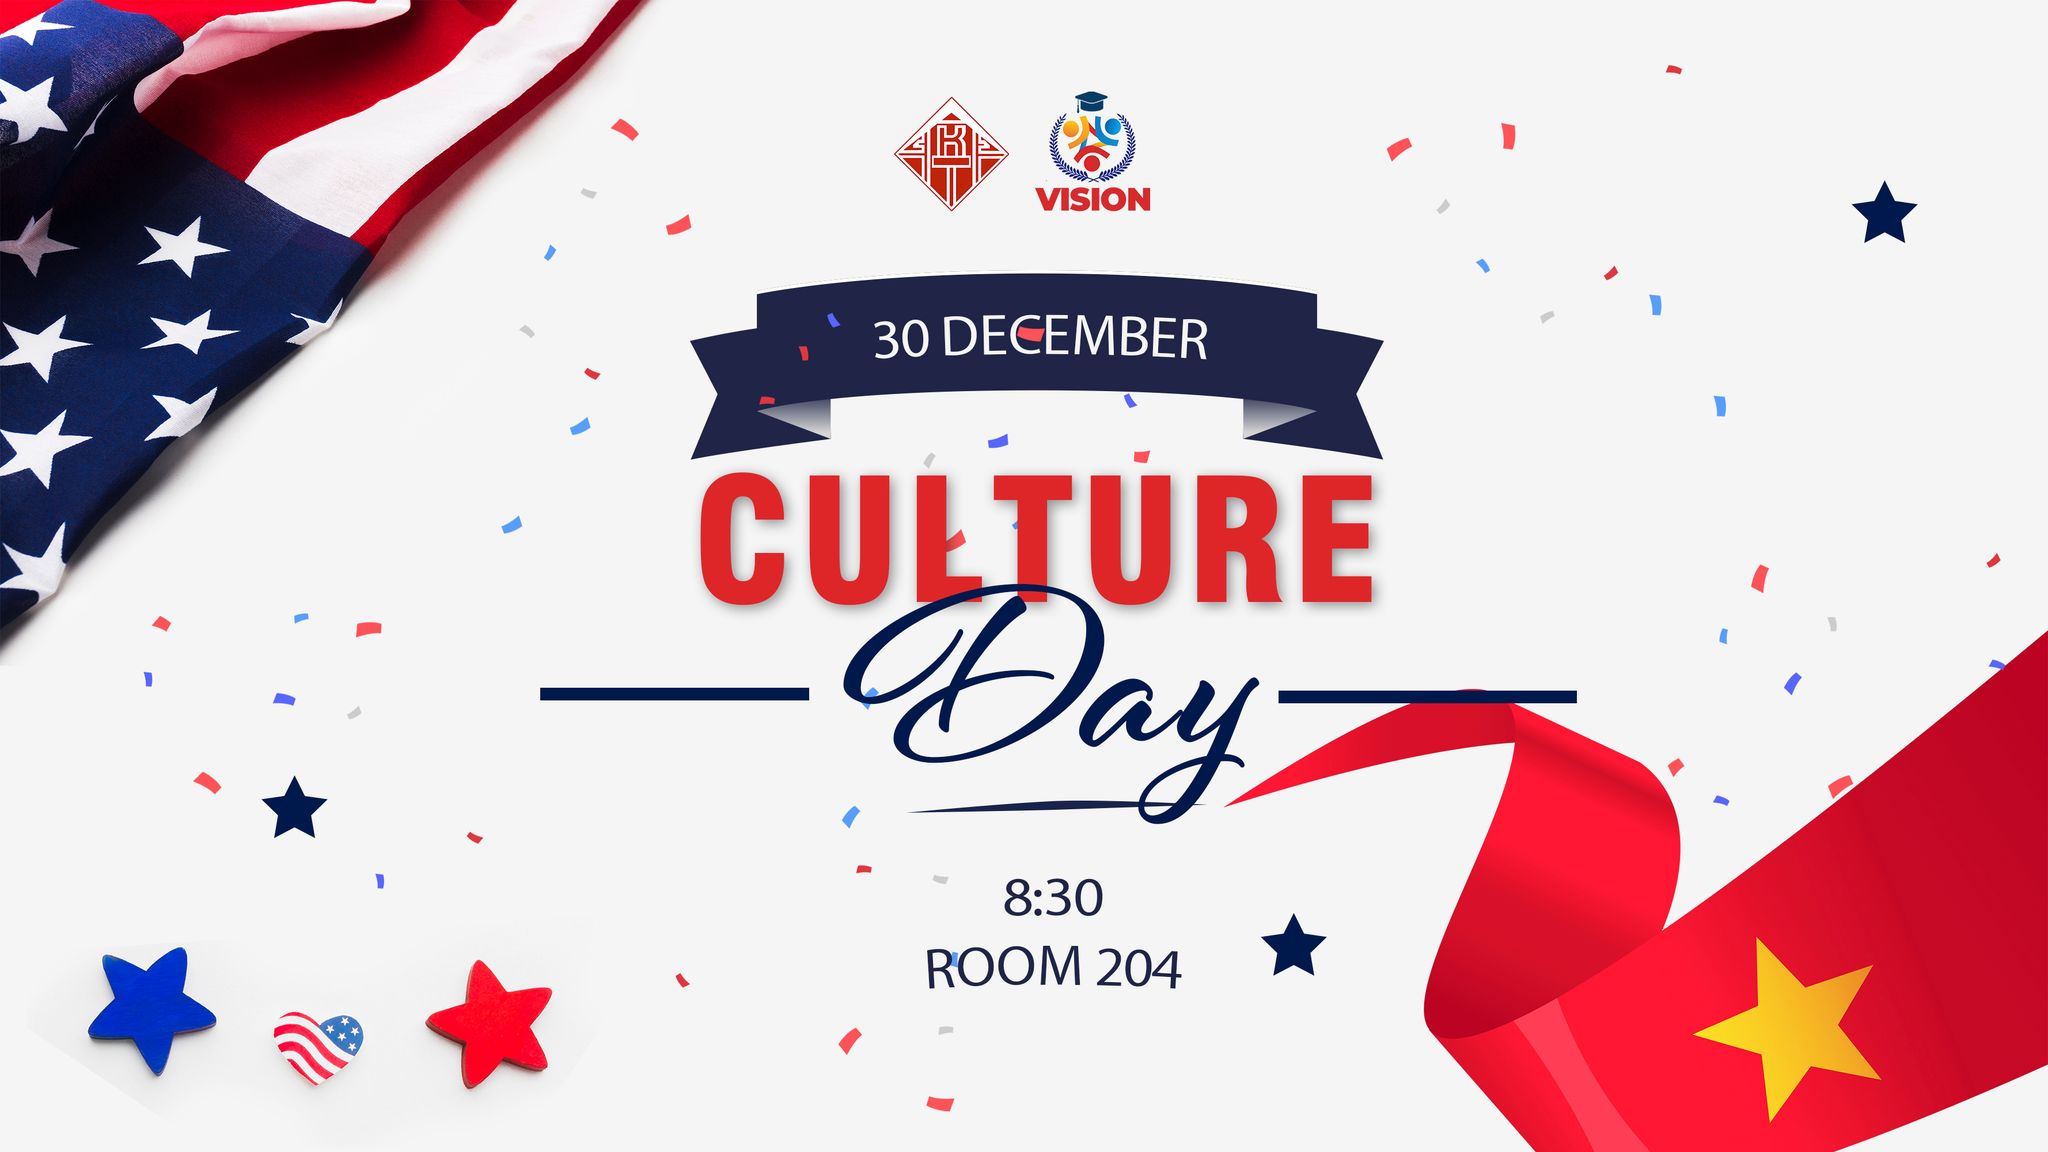 Chương trình giao lưu văn hóa Culture Day 